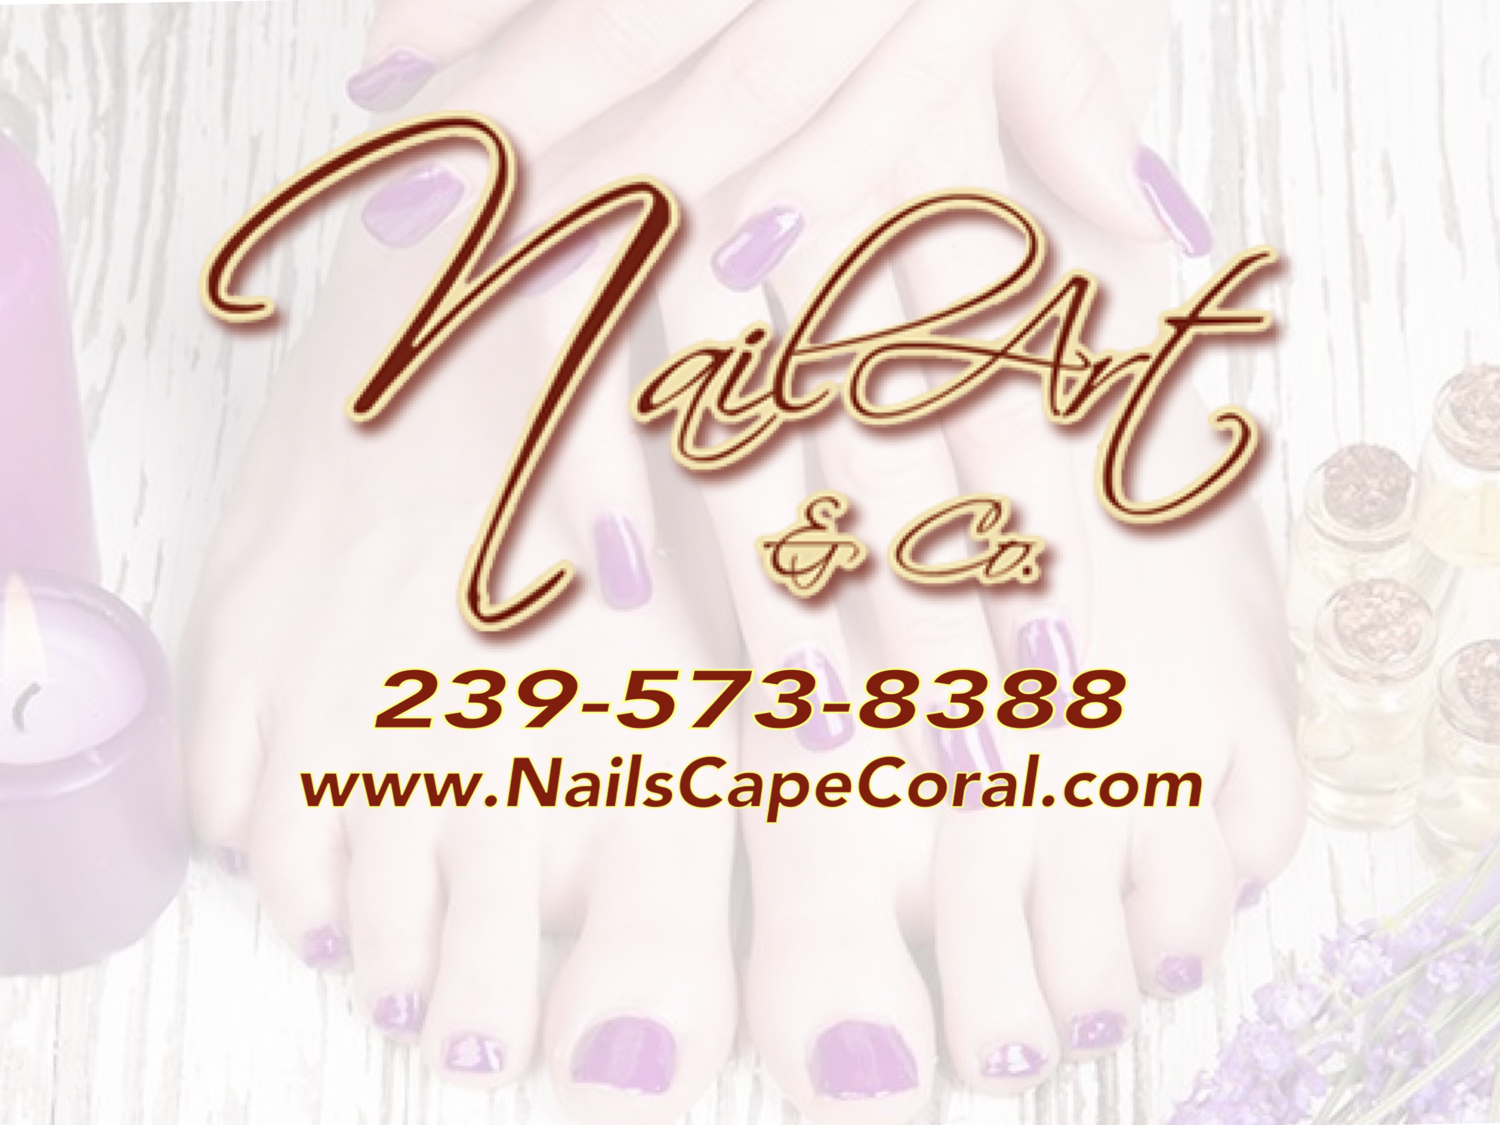 1. Nail Art 2 Cape Coral - Nail Salon in Cape Coral, FL - wide 4